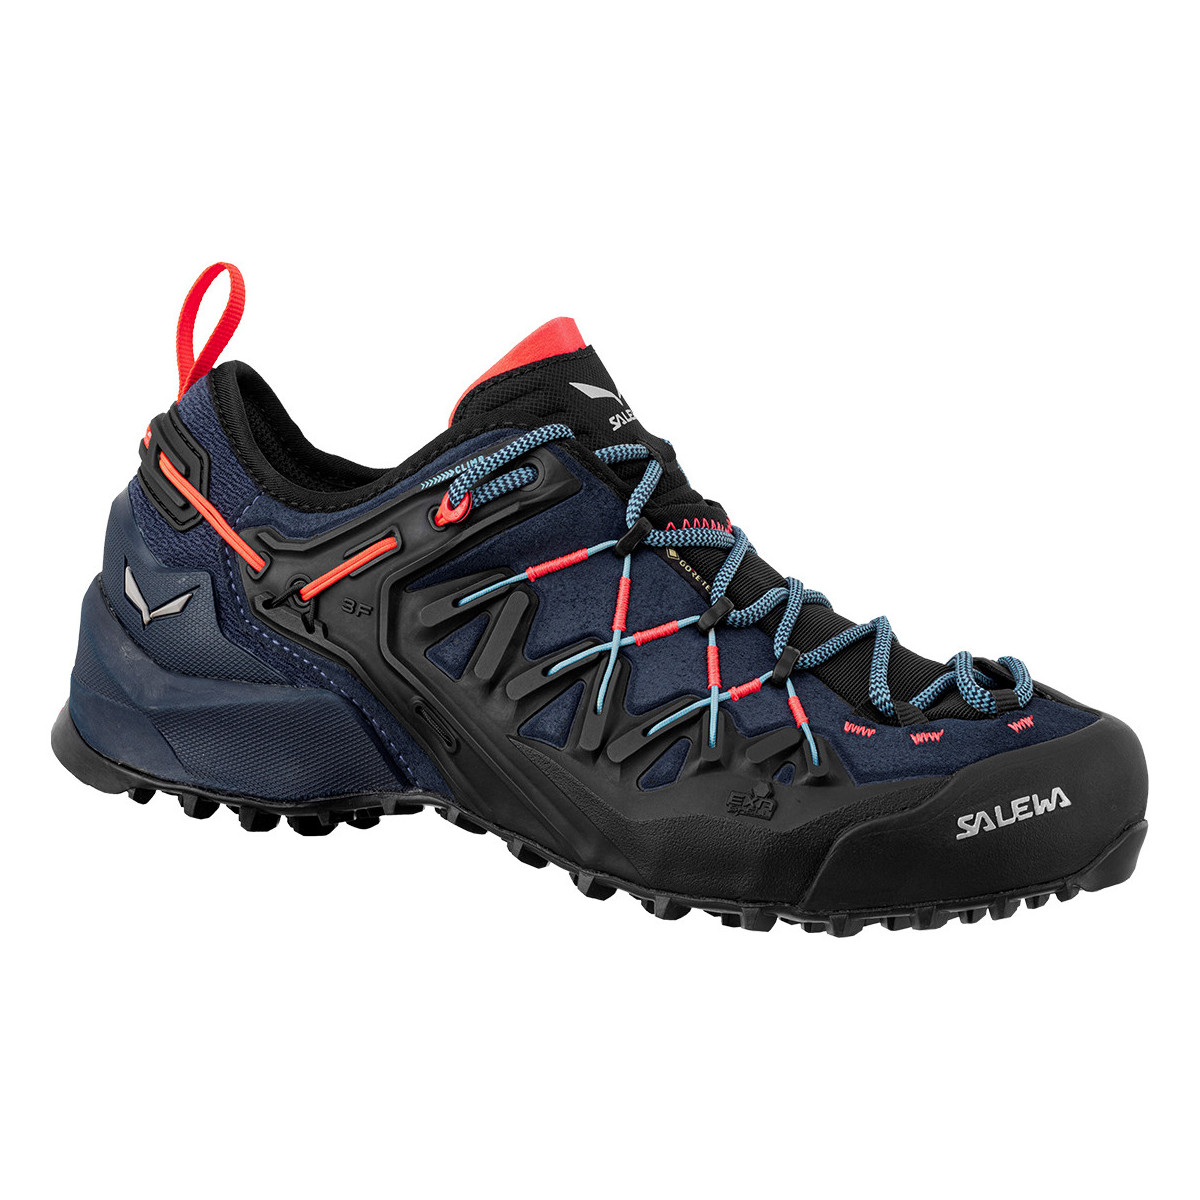 Sapatos Mulher Sapatos de caminhada Salewa Ws Wildfire Edge GTX 61376-3965 Multicolor